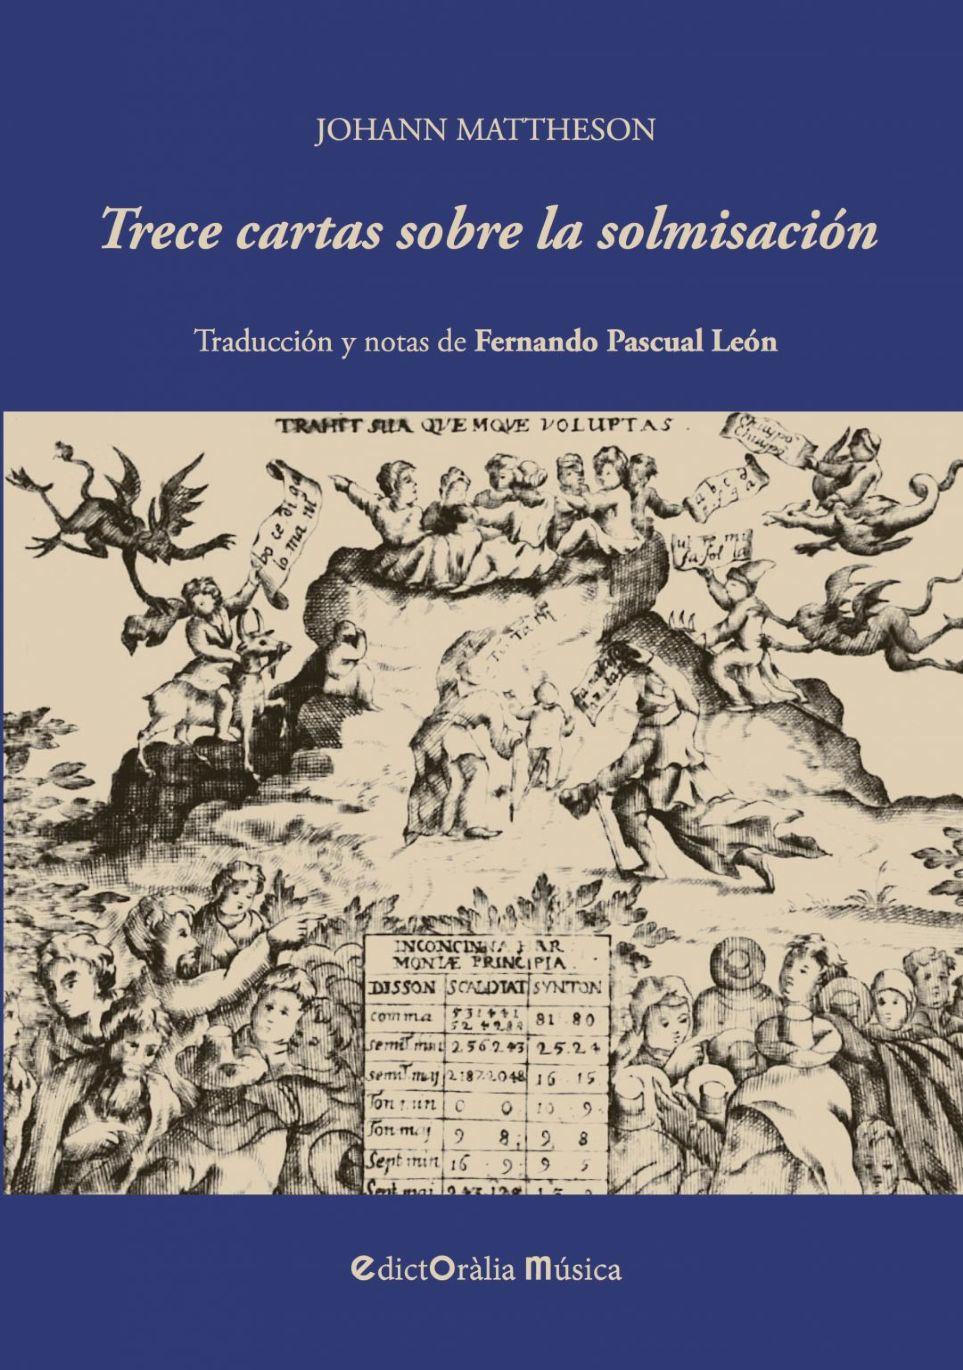 EdictOràlia publica «Trece cartas sobre la solmisación», de Johann Mattheson